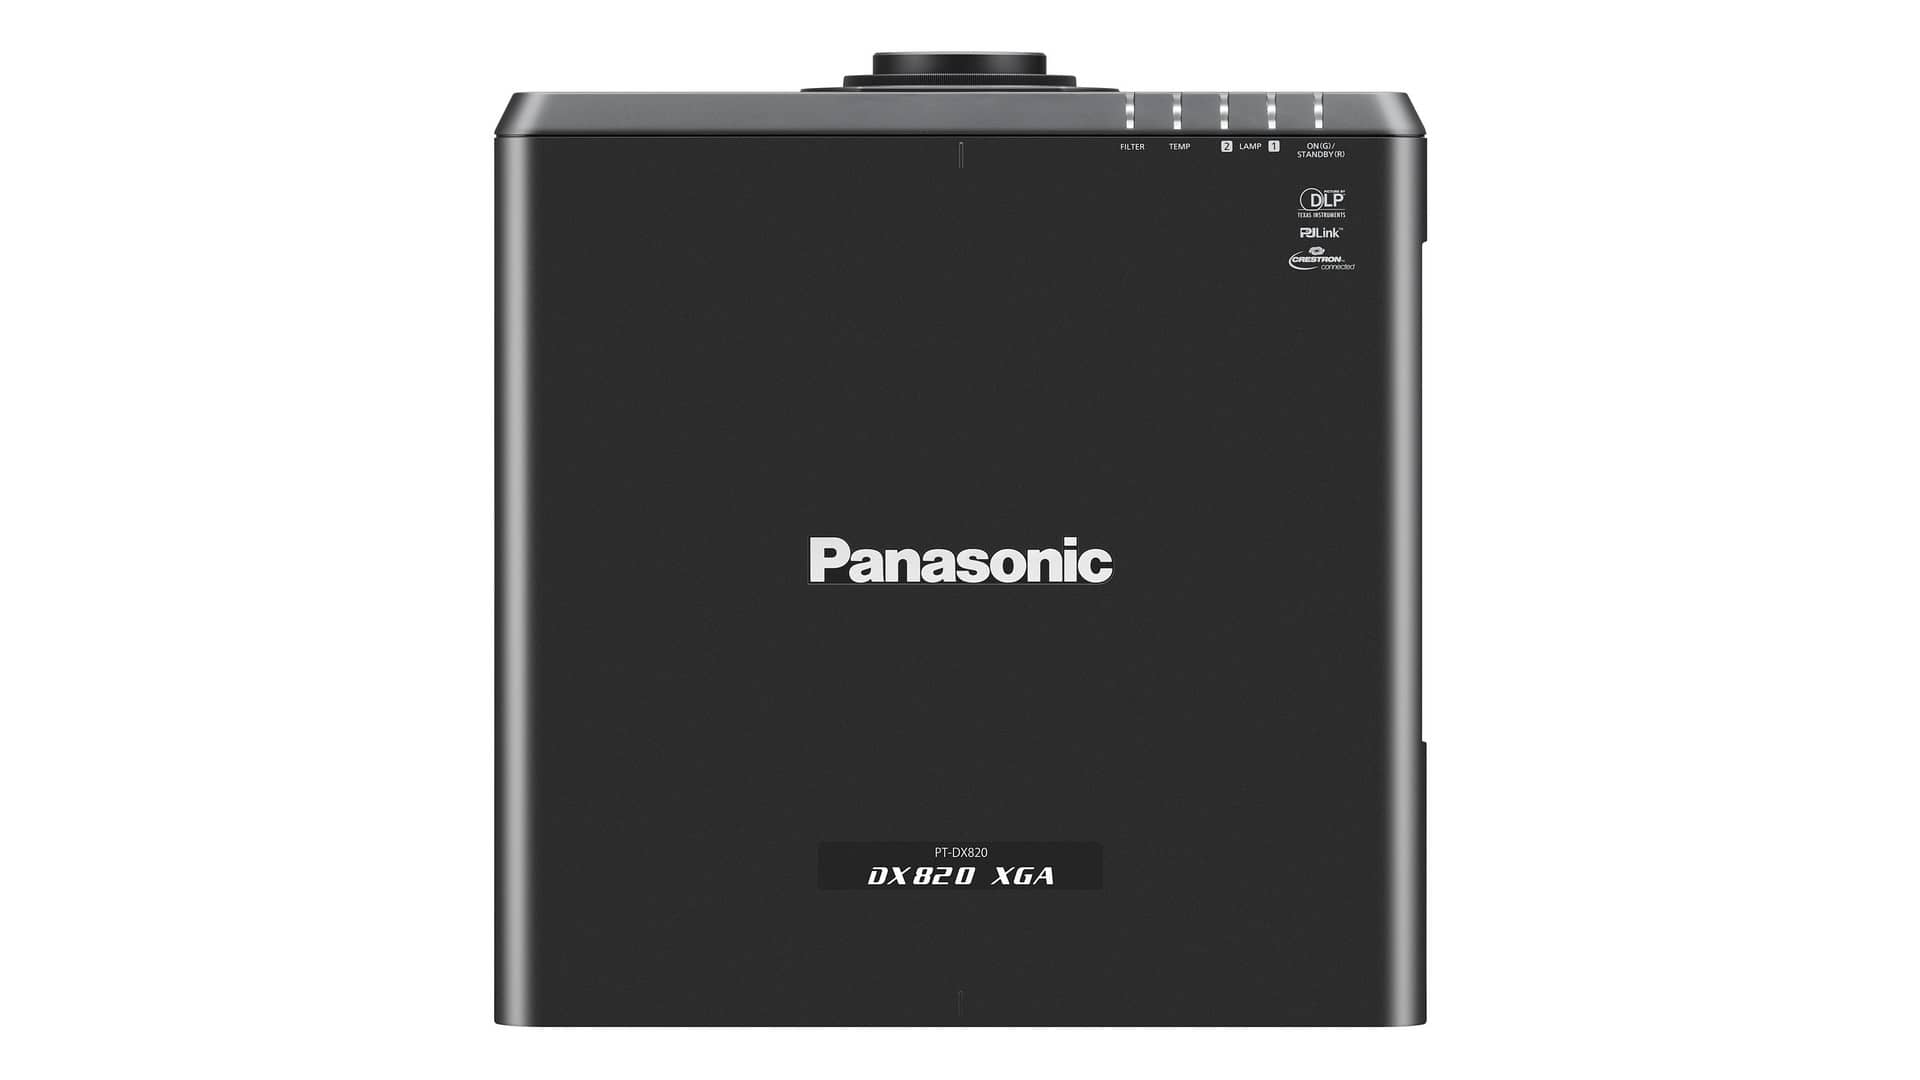 Изображения PANASONIC PT-DX820BE (Black)